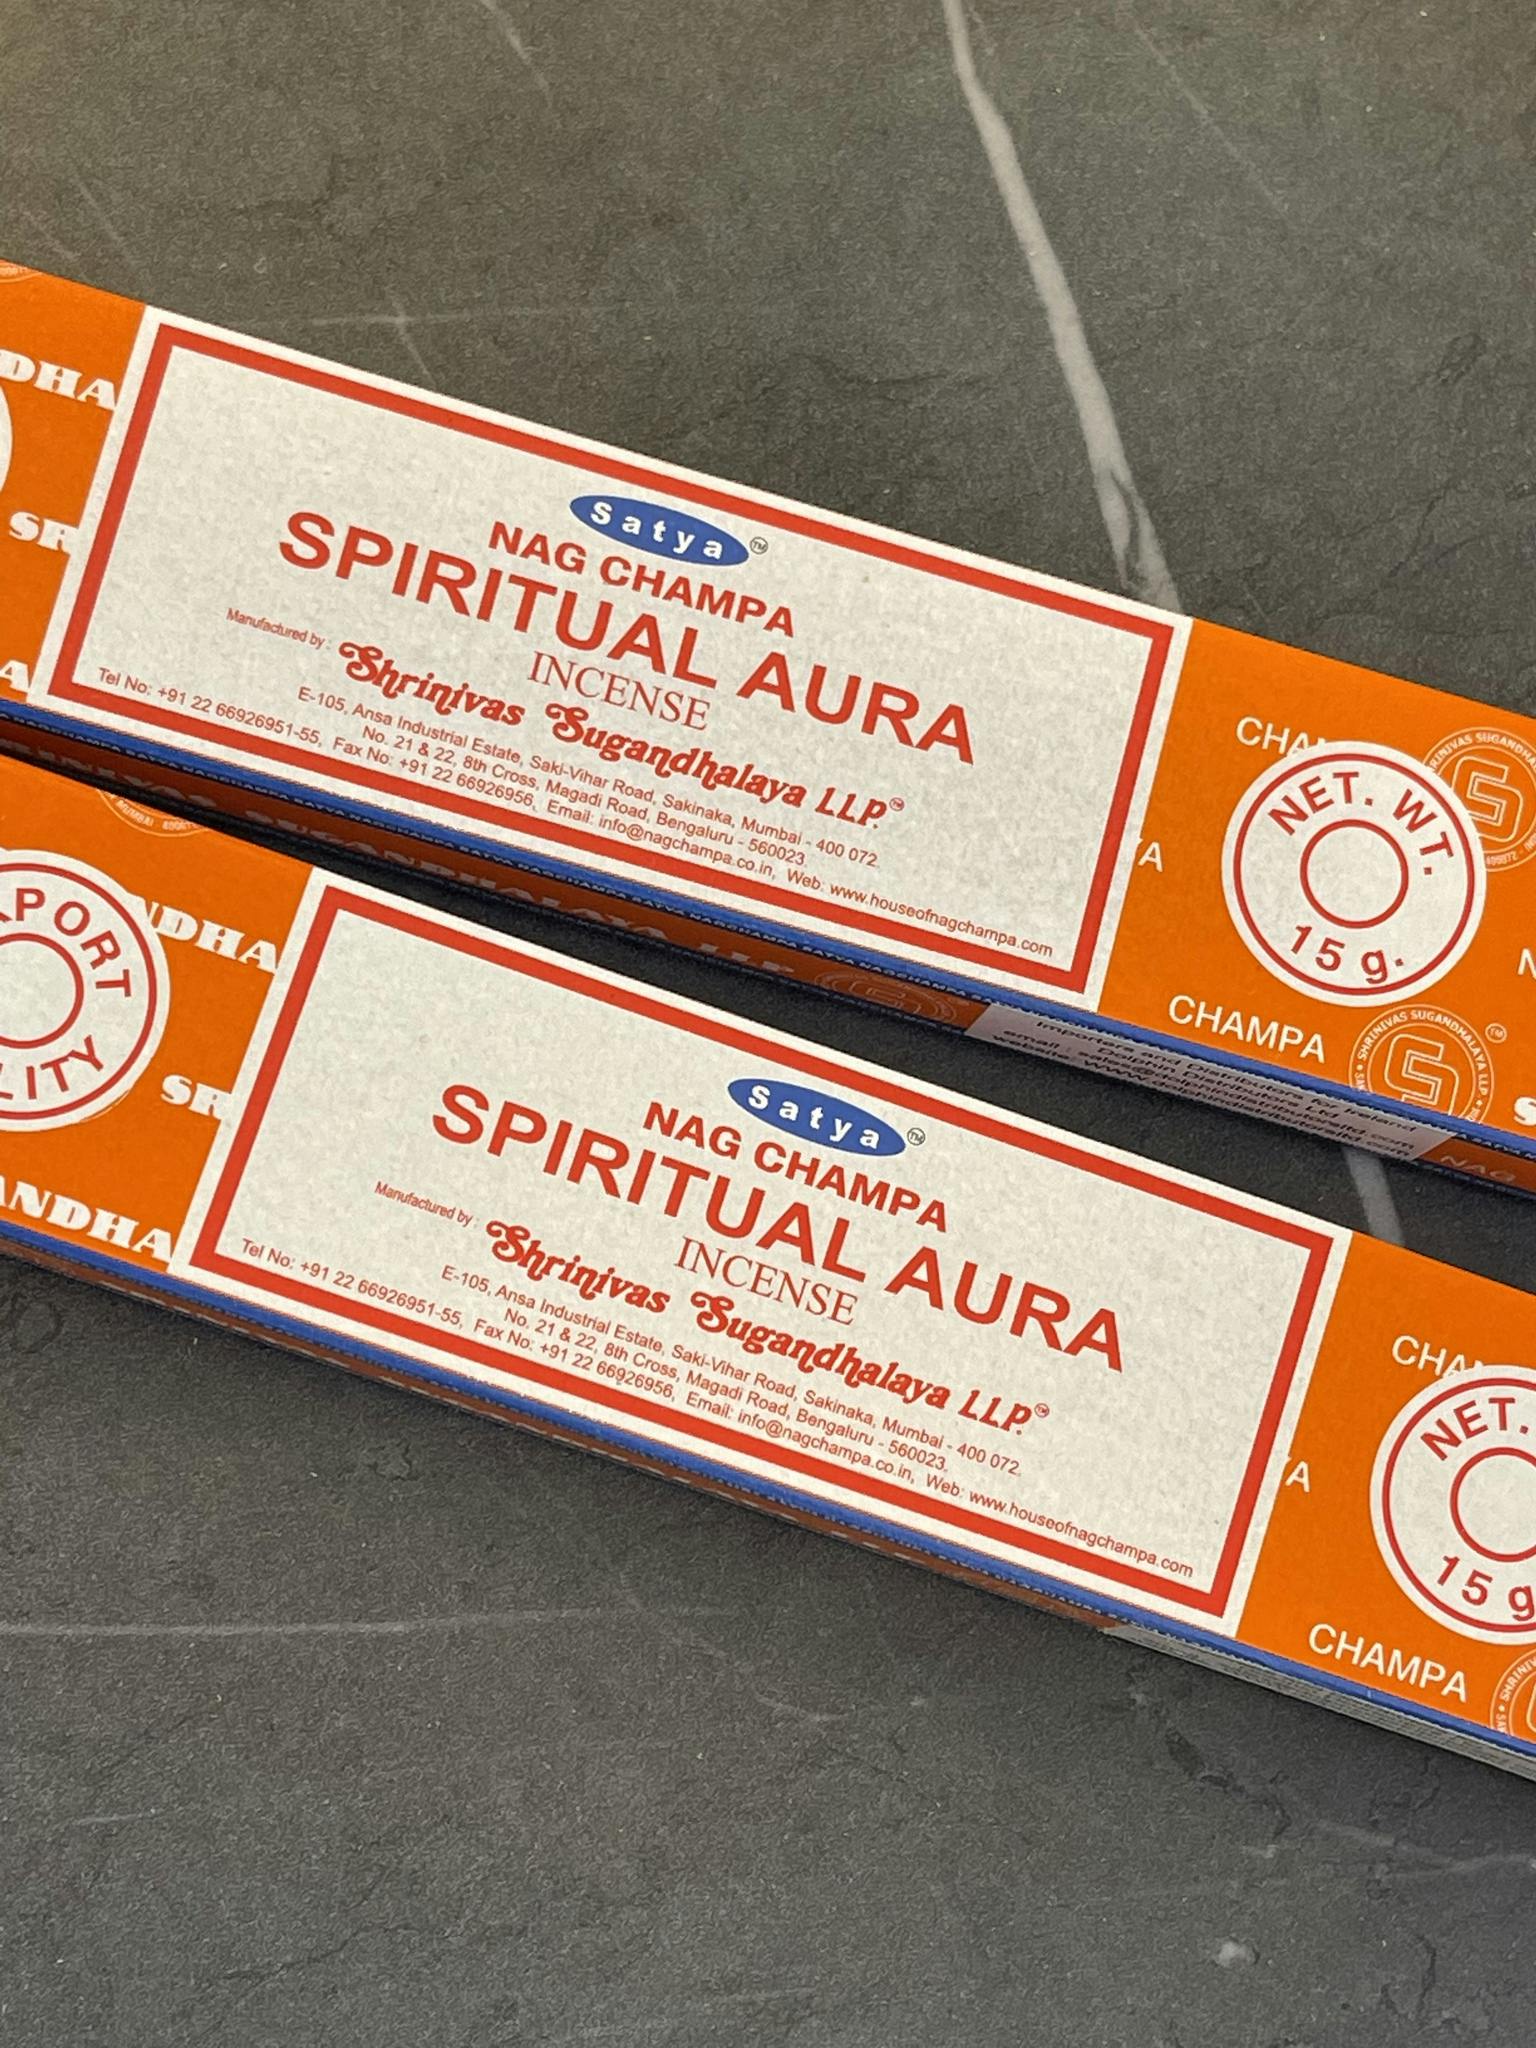 Spiritual Aura